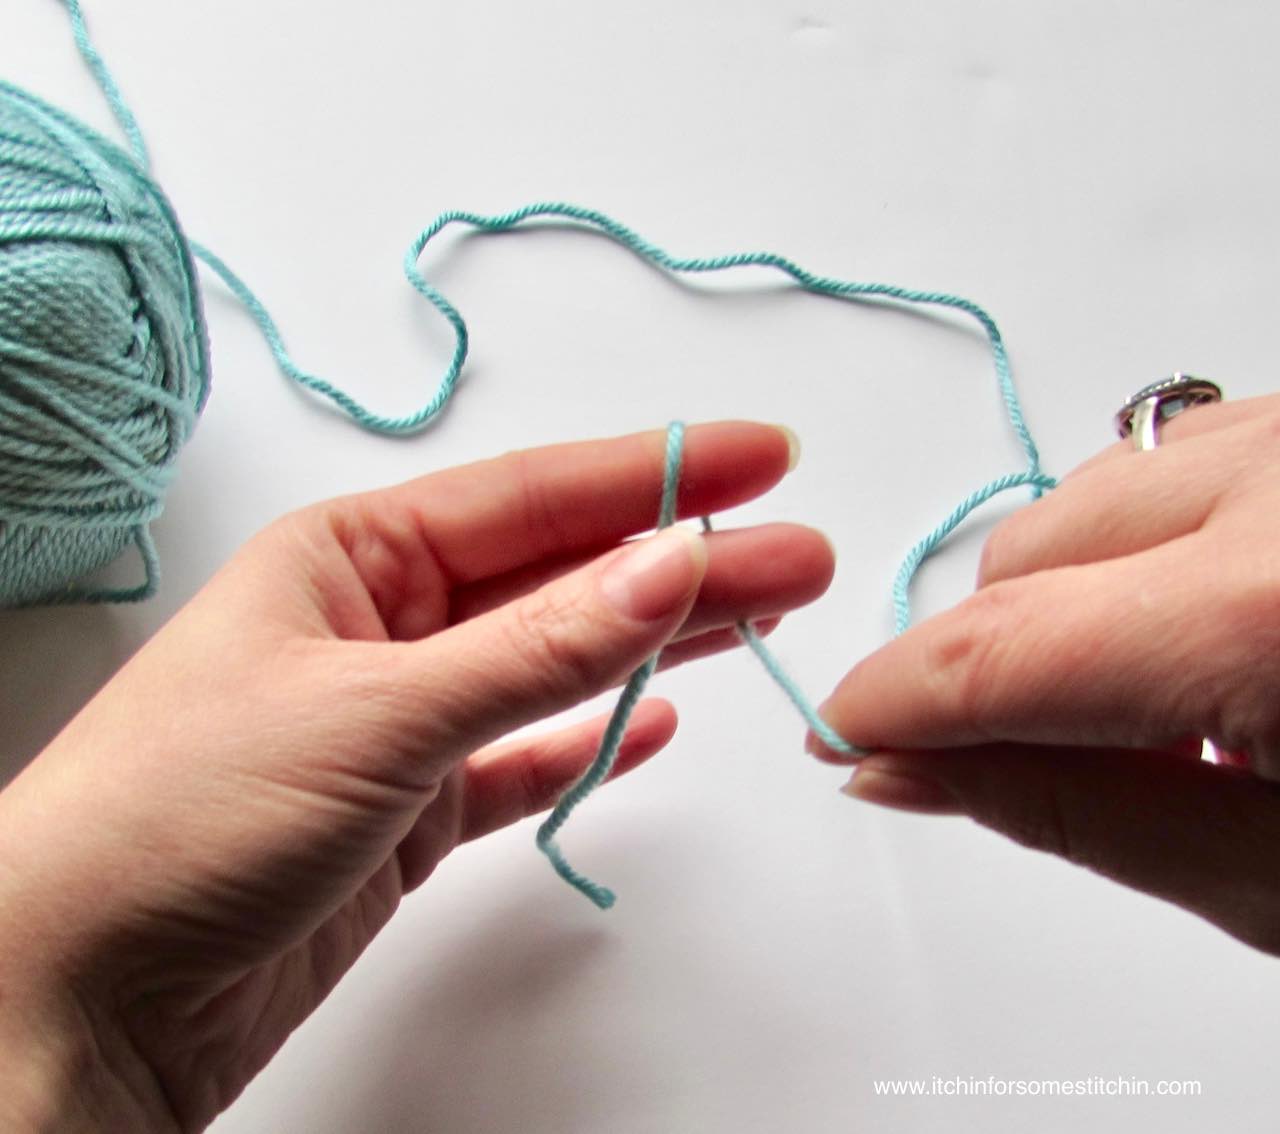 How to Make a Slip Knot for Crochet: 2 Easy Methods - Sarah Maker